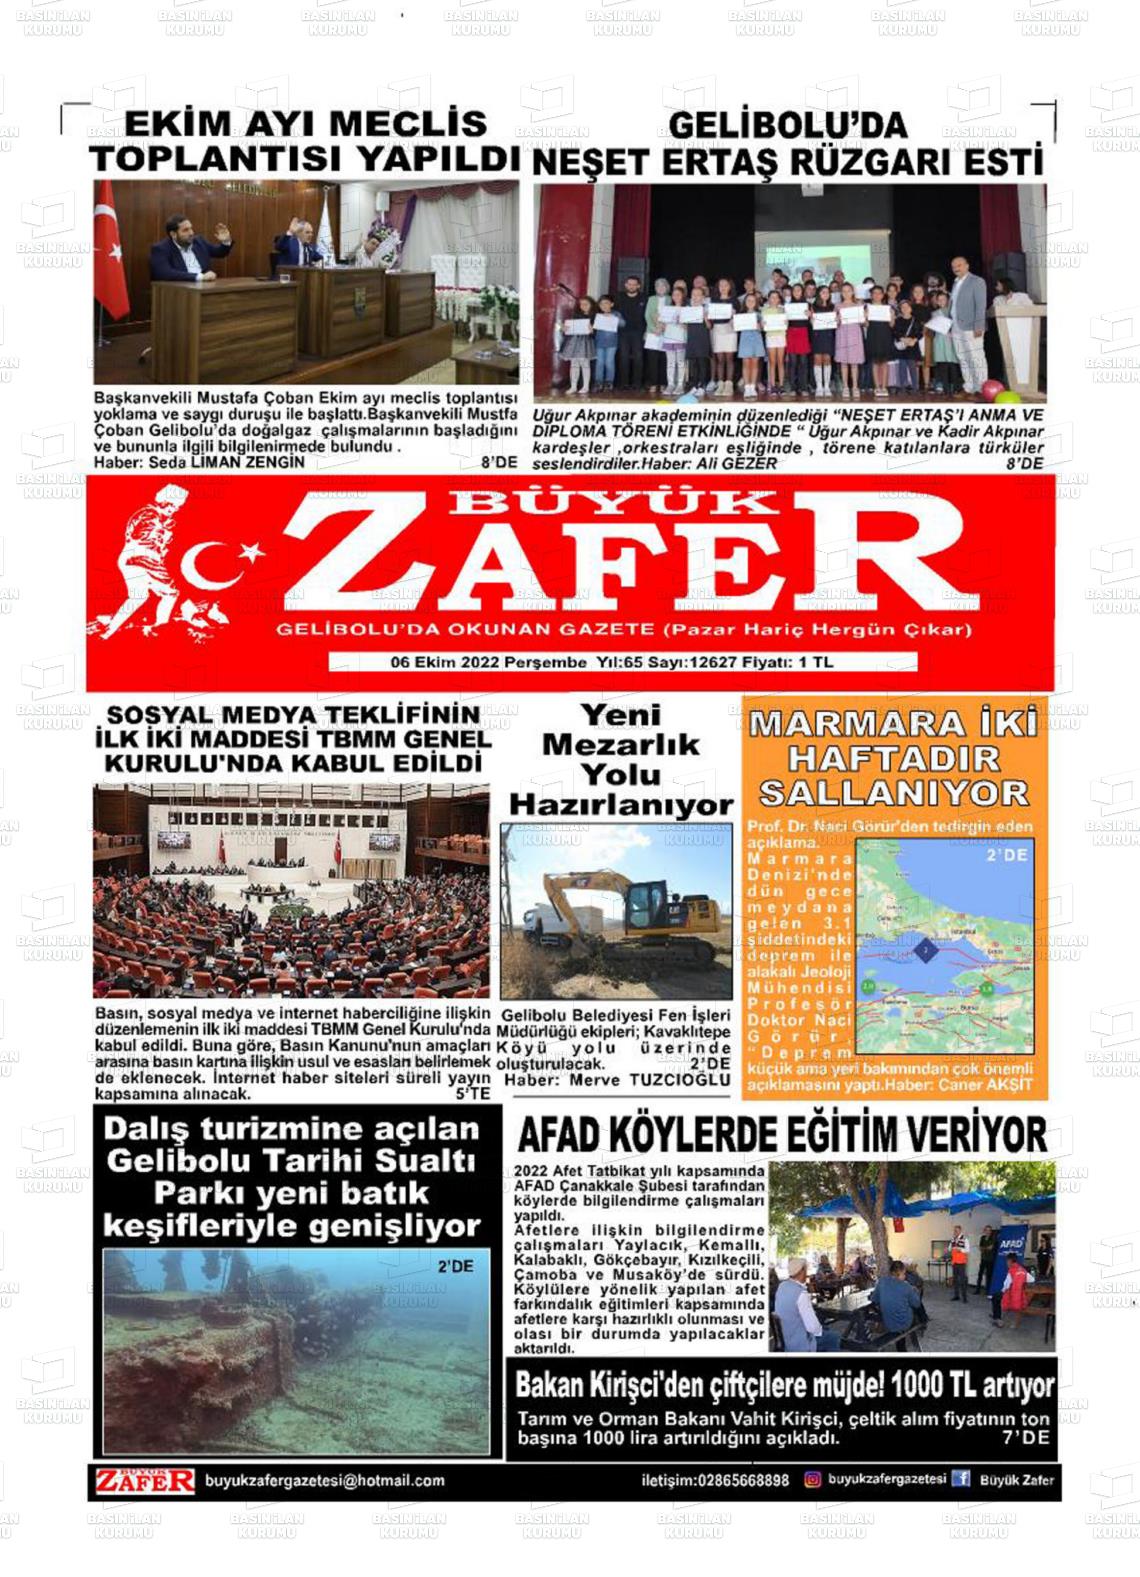 06 Ekim 2022 Büyük Zafer Gazete Manşeti